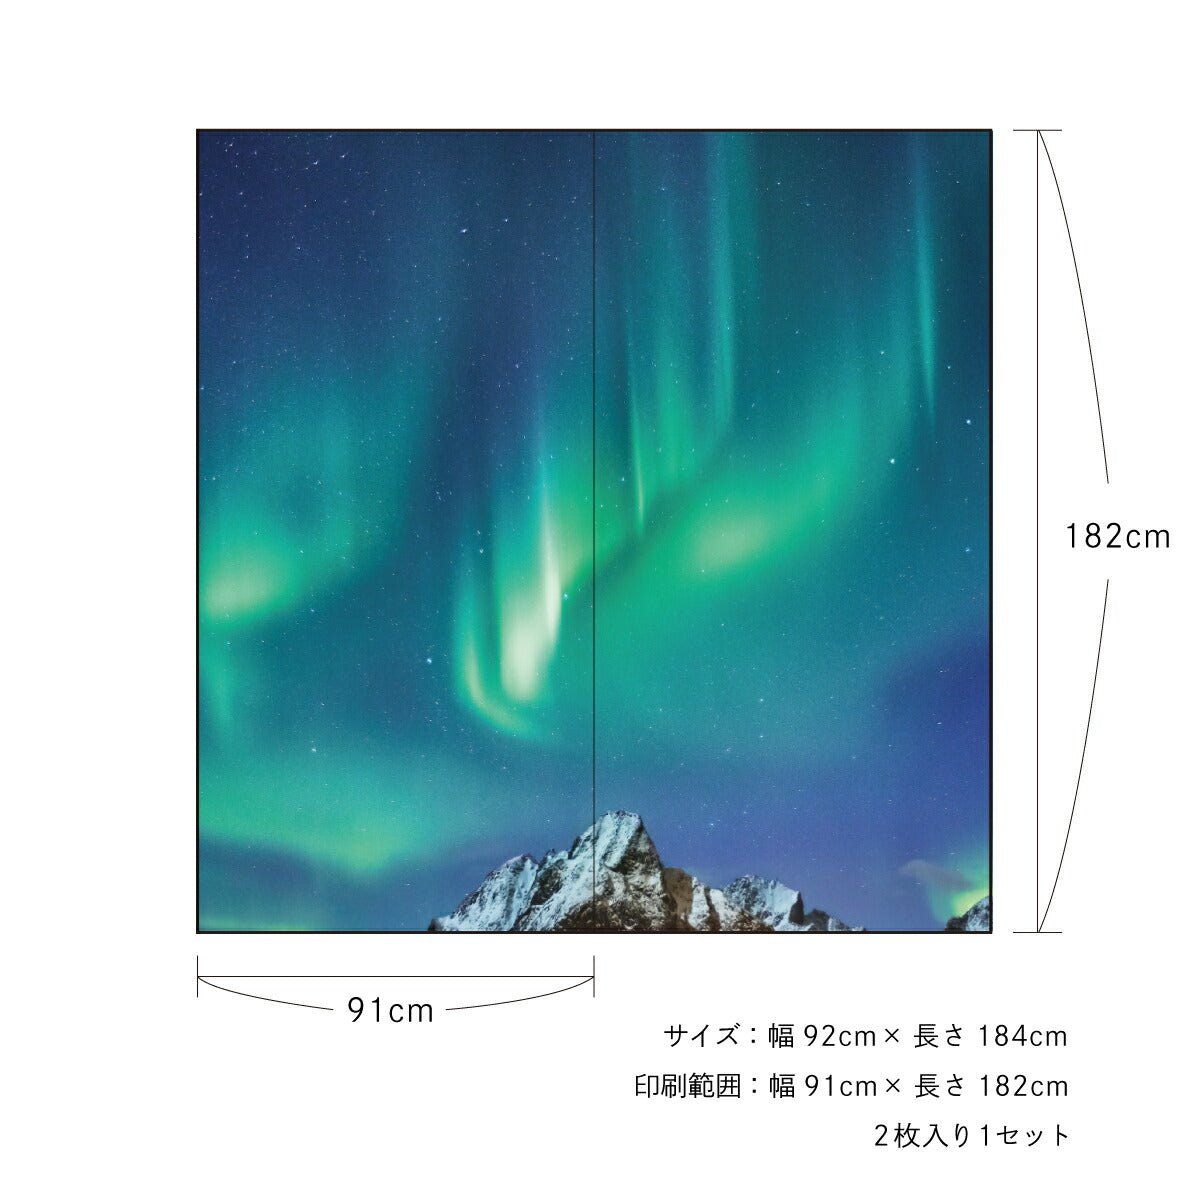 ふすま紙 空もよう襖紙 sky-09F Aurora 91cm×182cm 2枚1組 水で貼るタイプ アサヒペン<br>おしゃれ 洋風 空 北欧 オーロラ 柄 アート デザイン 再湿 ふすま<br>